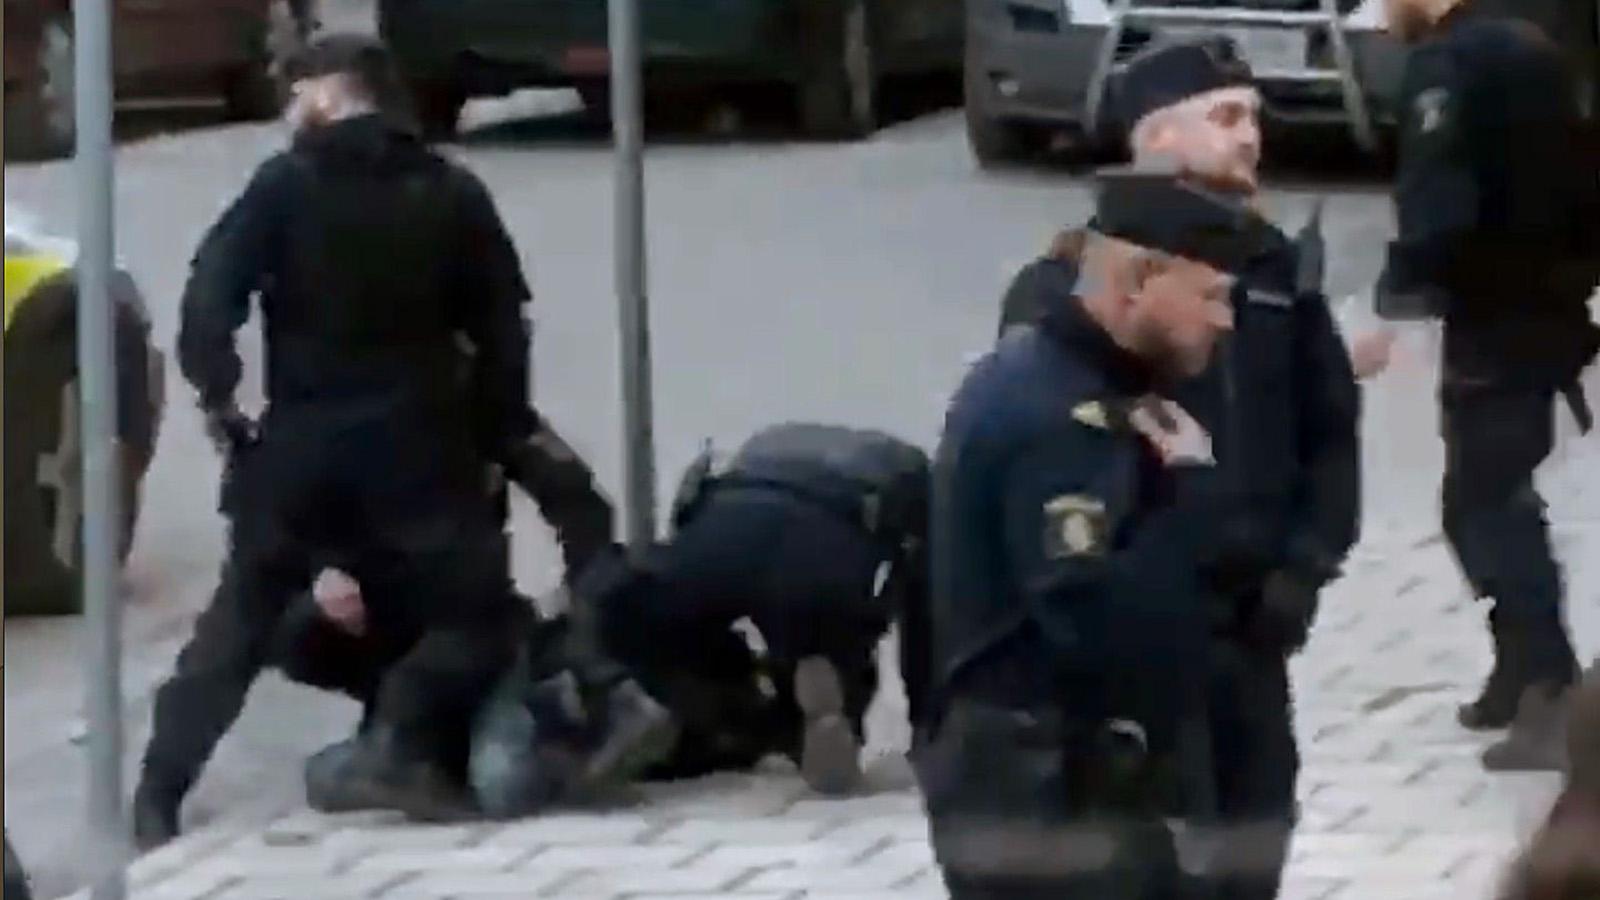 Här brottas skådespelaren Adam Pålsson ner av polis under inspelningen av SVT-serien ”Innan vi dör” .